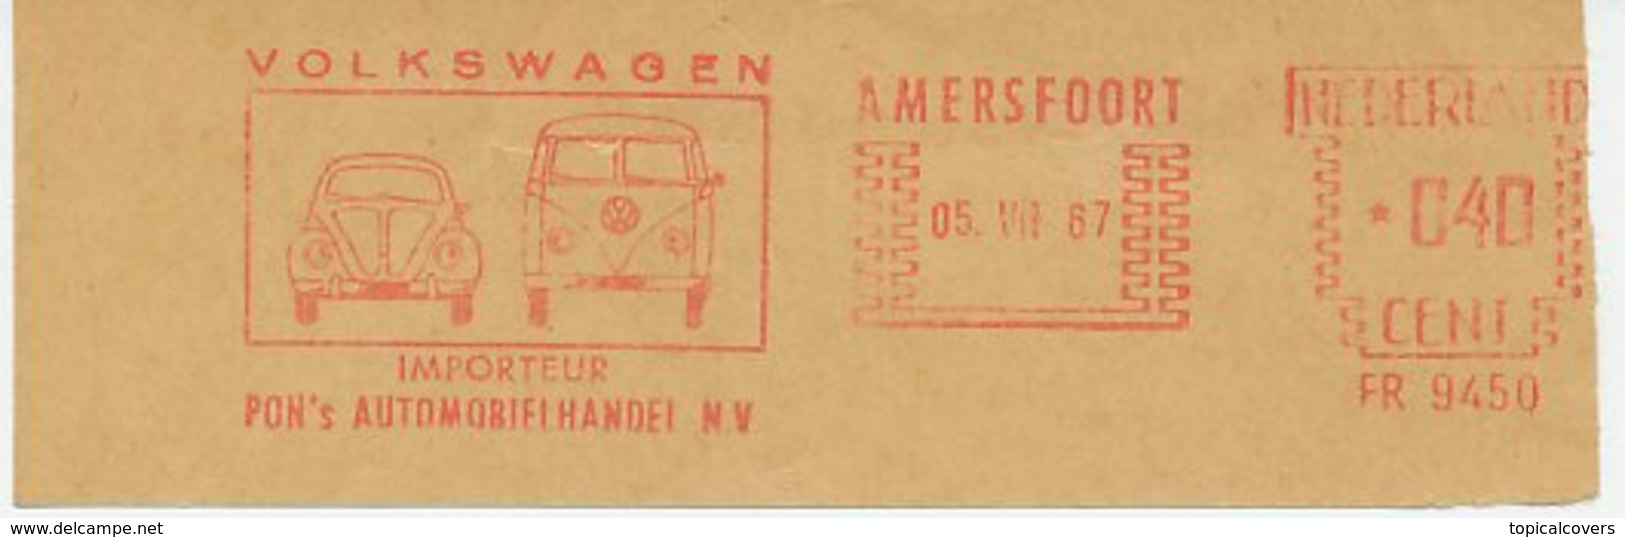 Meter Cut Netherlands 1967 Car - Volkswagen Beetle - Van - Automobili